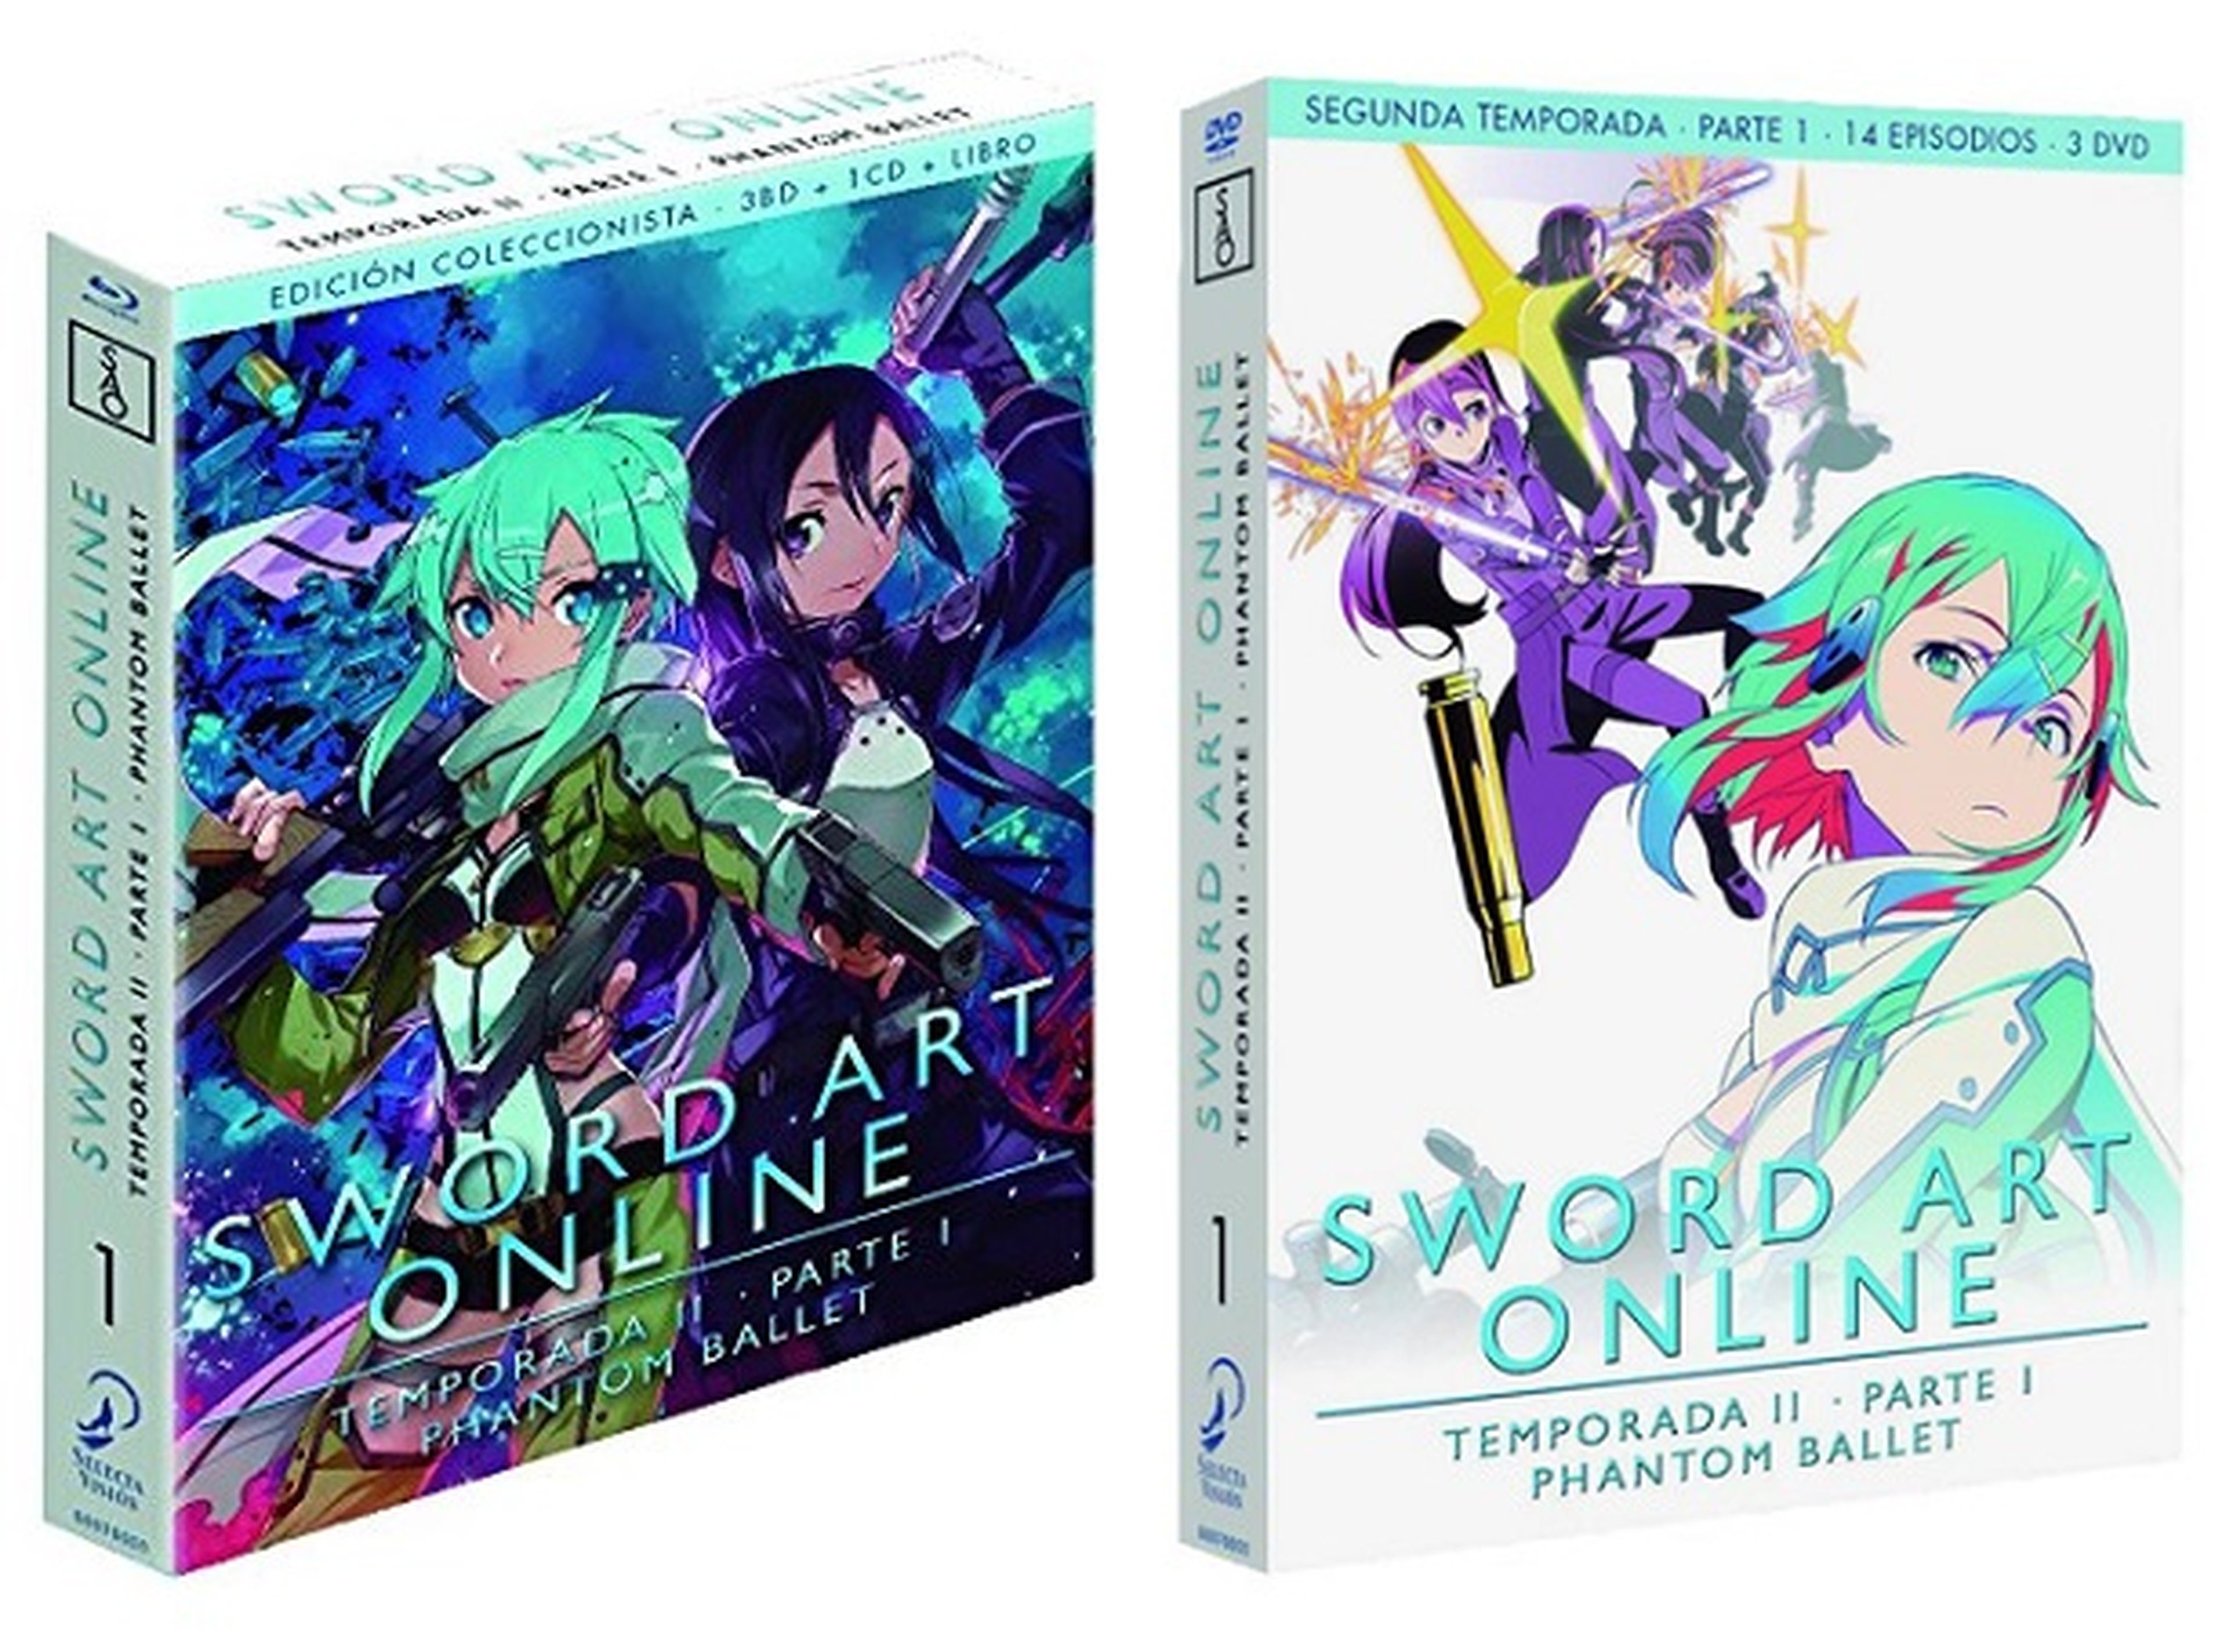 Sword Art Online II, en diciembre en DVD y BD